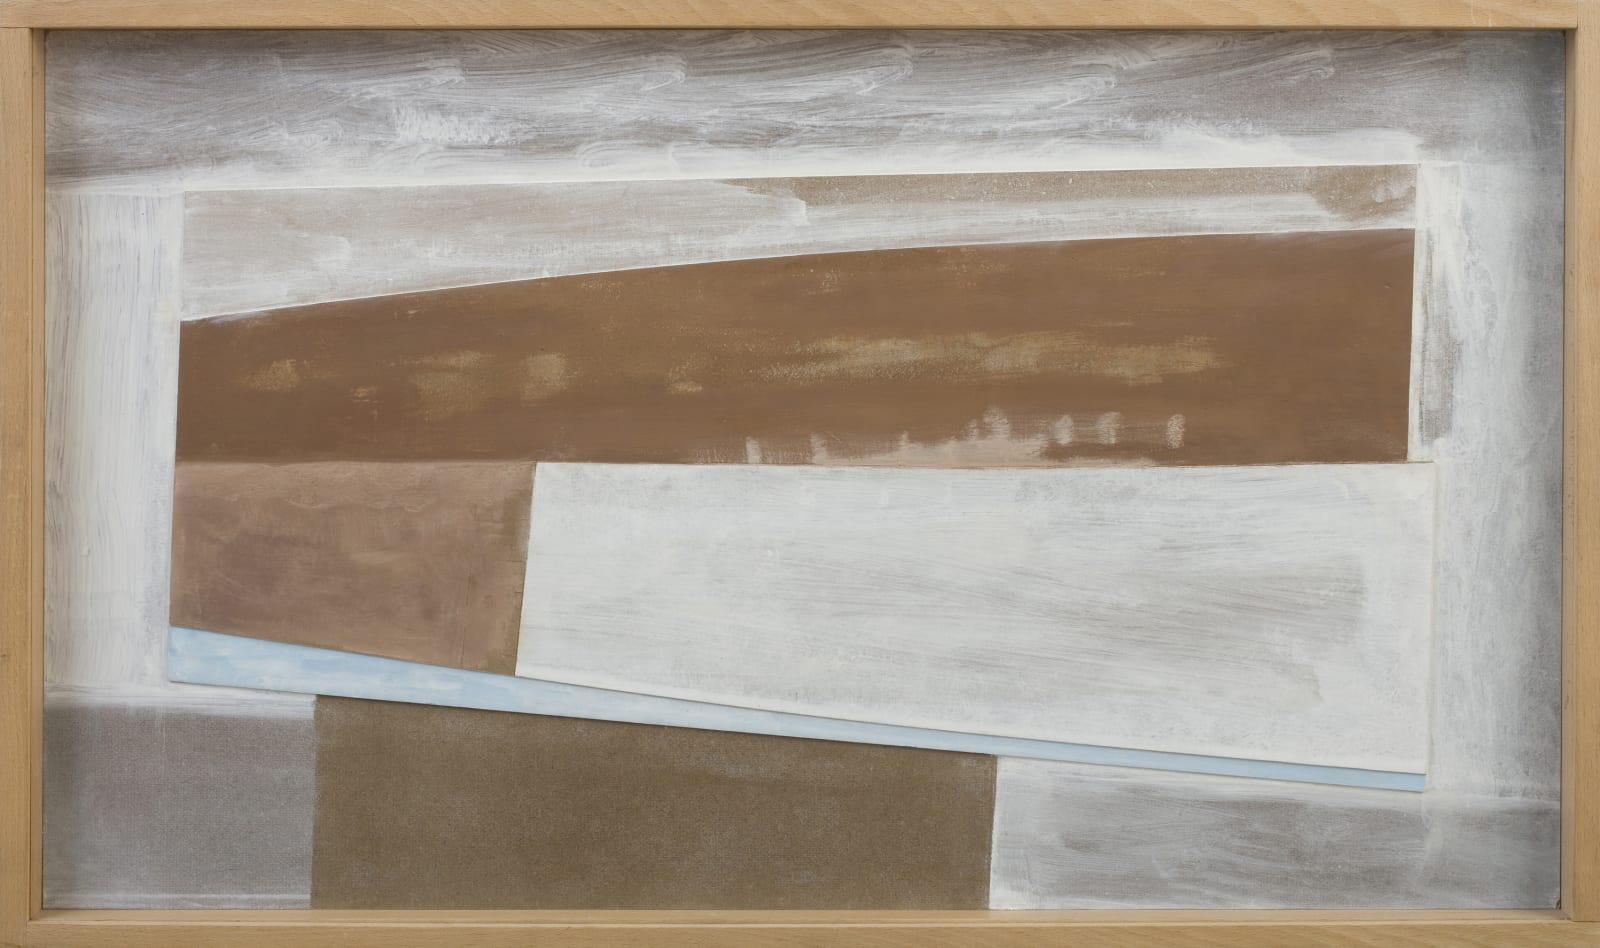 Ben Nicholson, 1979 (untitled relief), 1960-79, c.